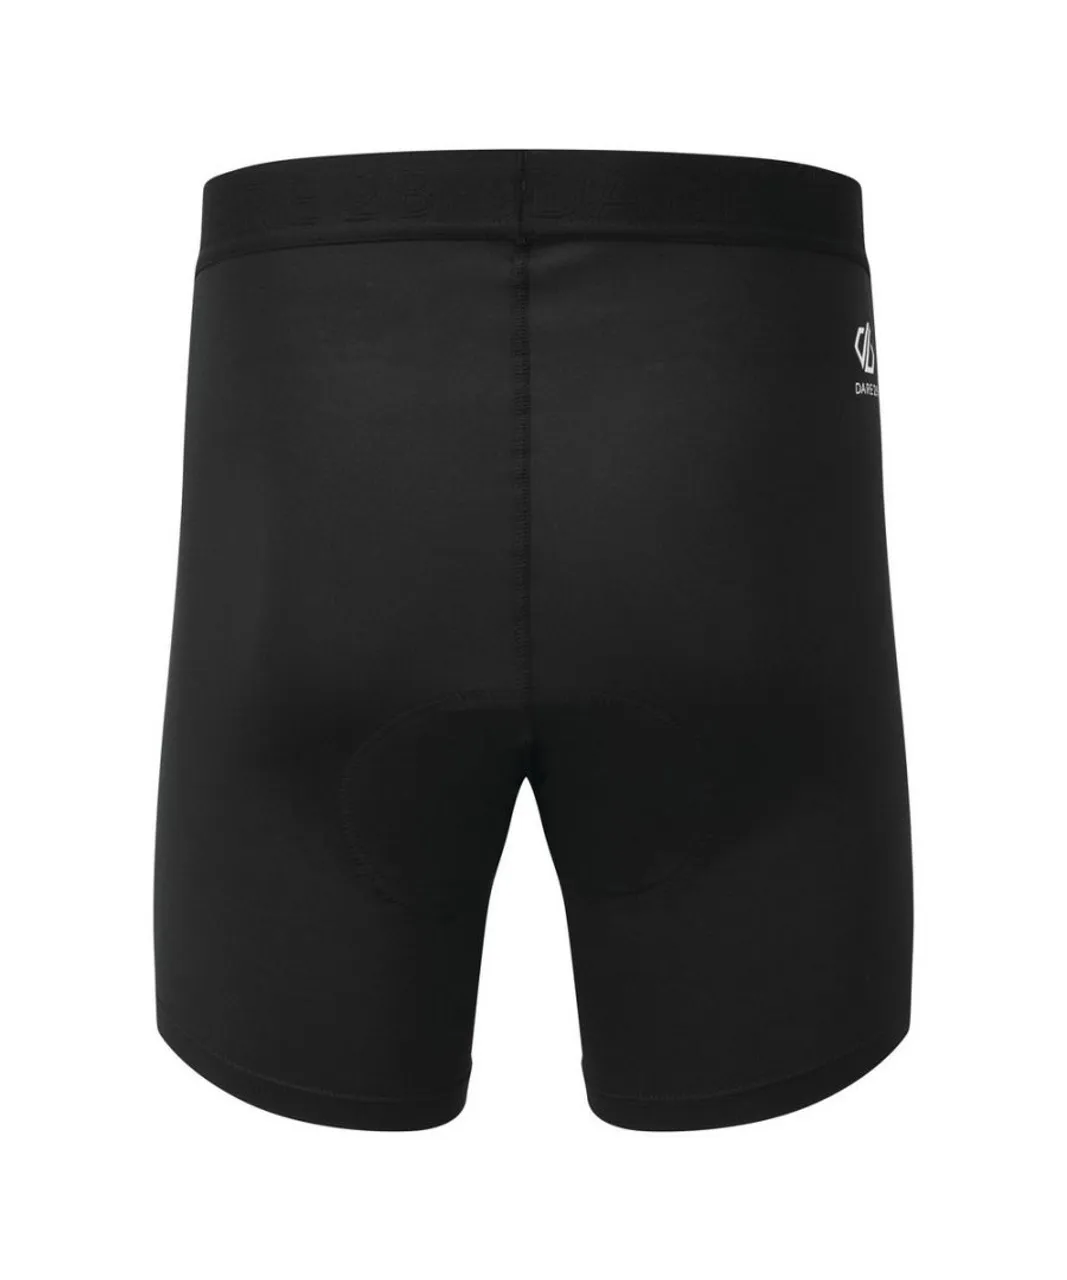 Dare 2B Mens Cyclical Under Shorts (Black)